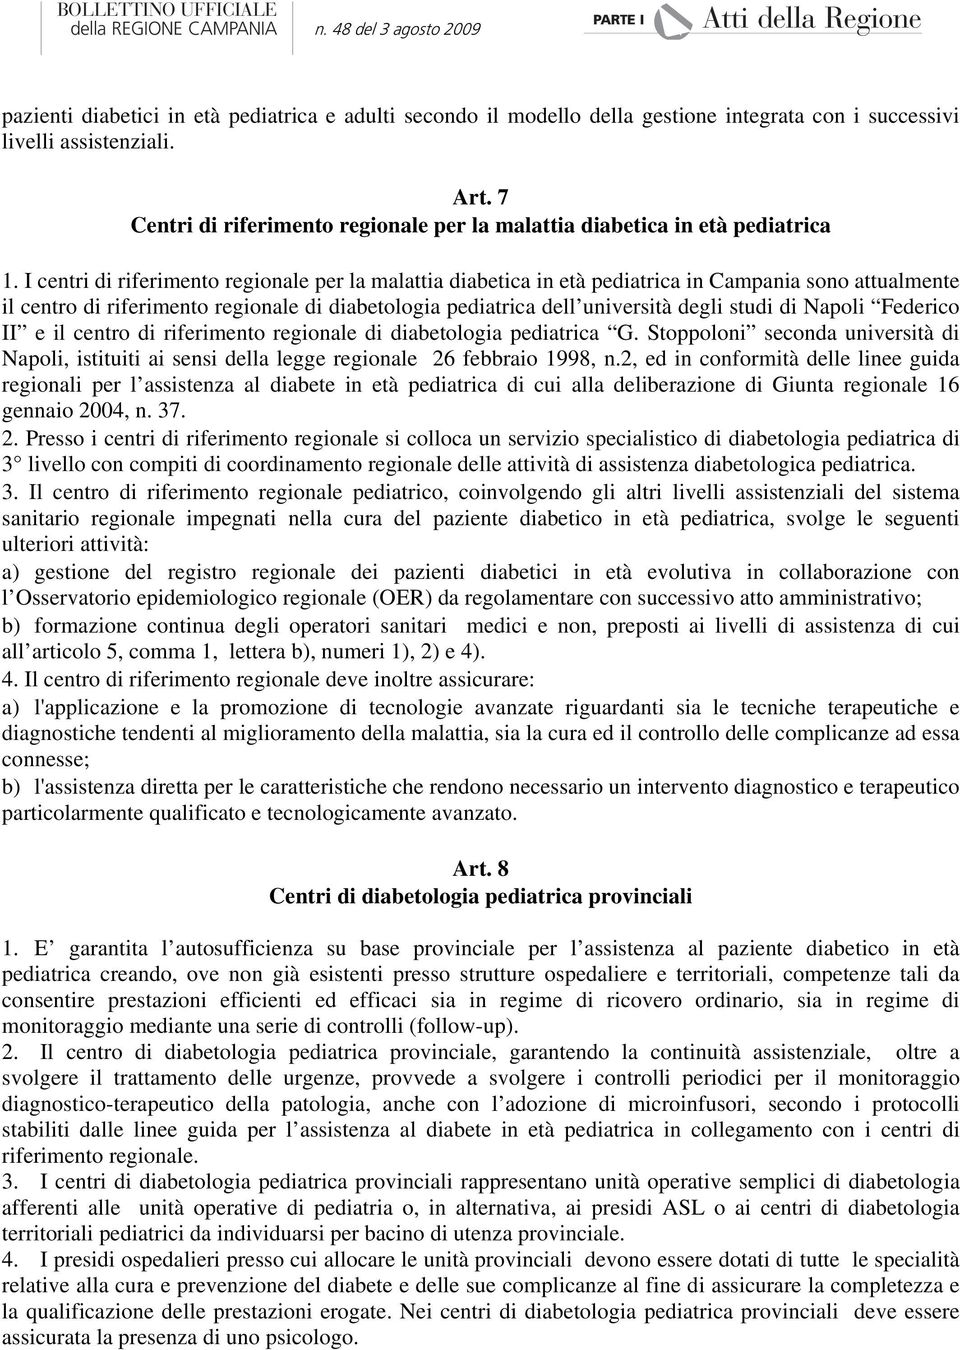 I centri di riferimento regionale per la malattia diabetica in età pediatrica in Campania sono attualmente il centro di riferimento regionale di diabetologia pediatrica dell università degli studi di